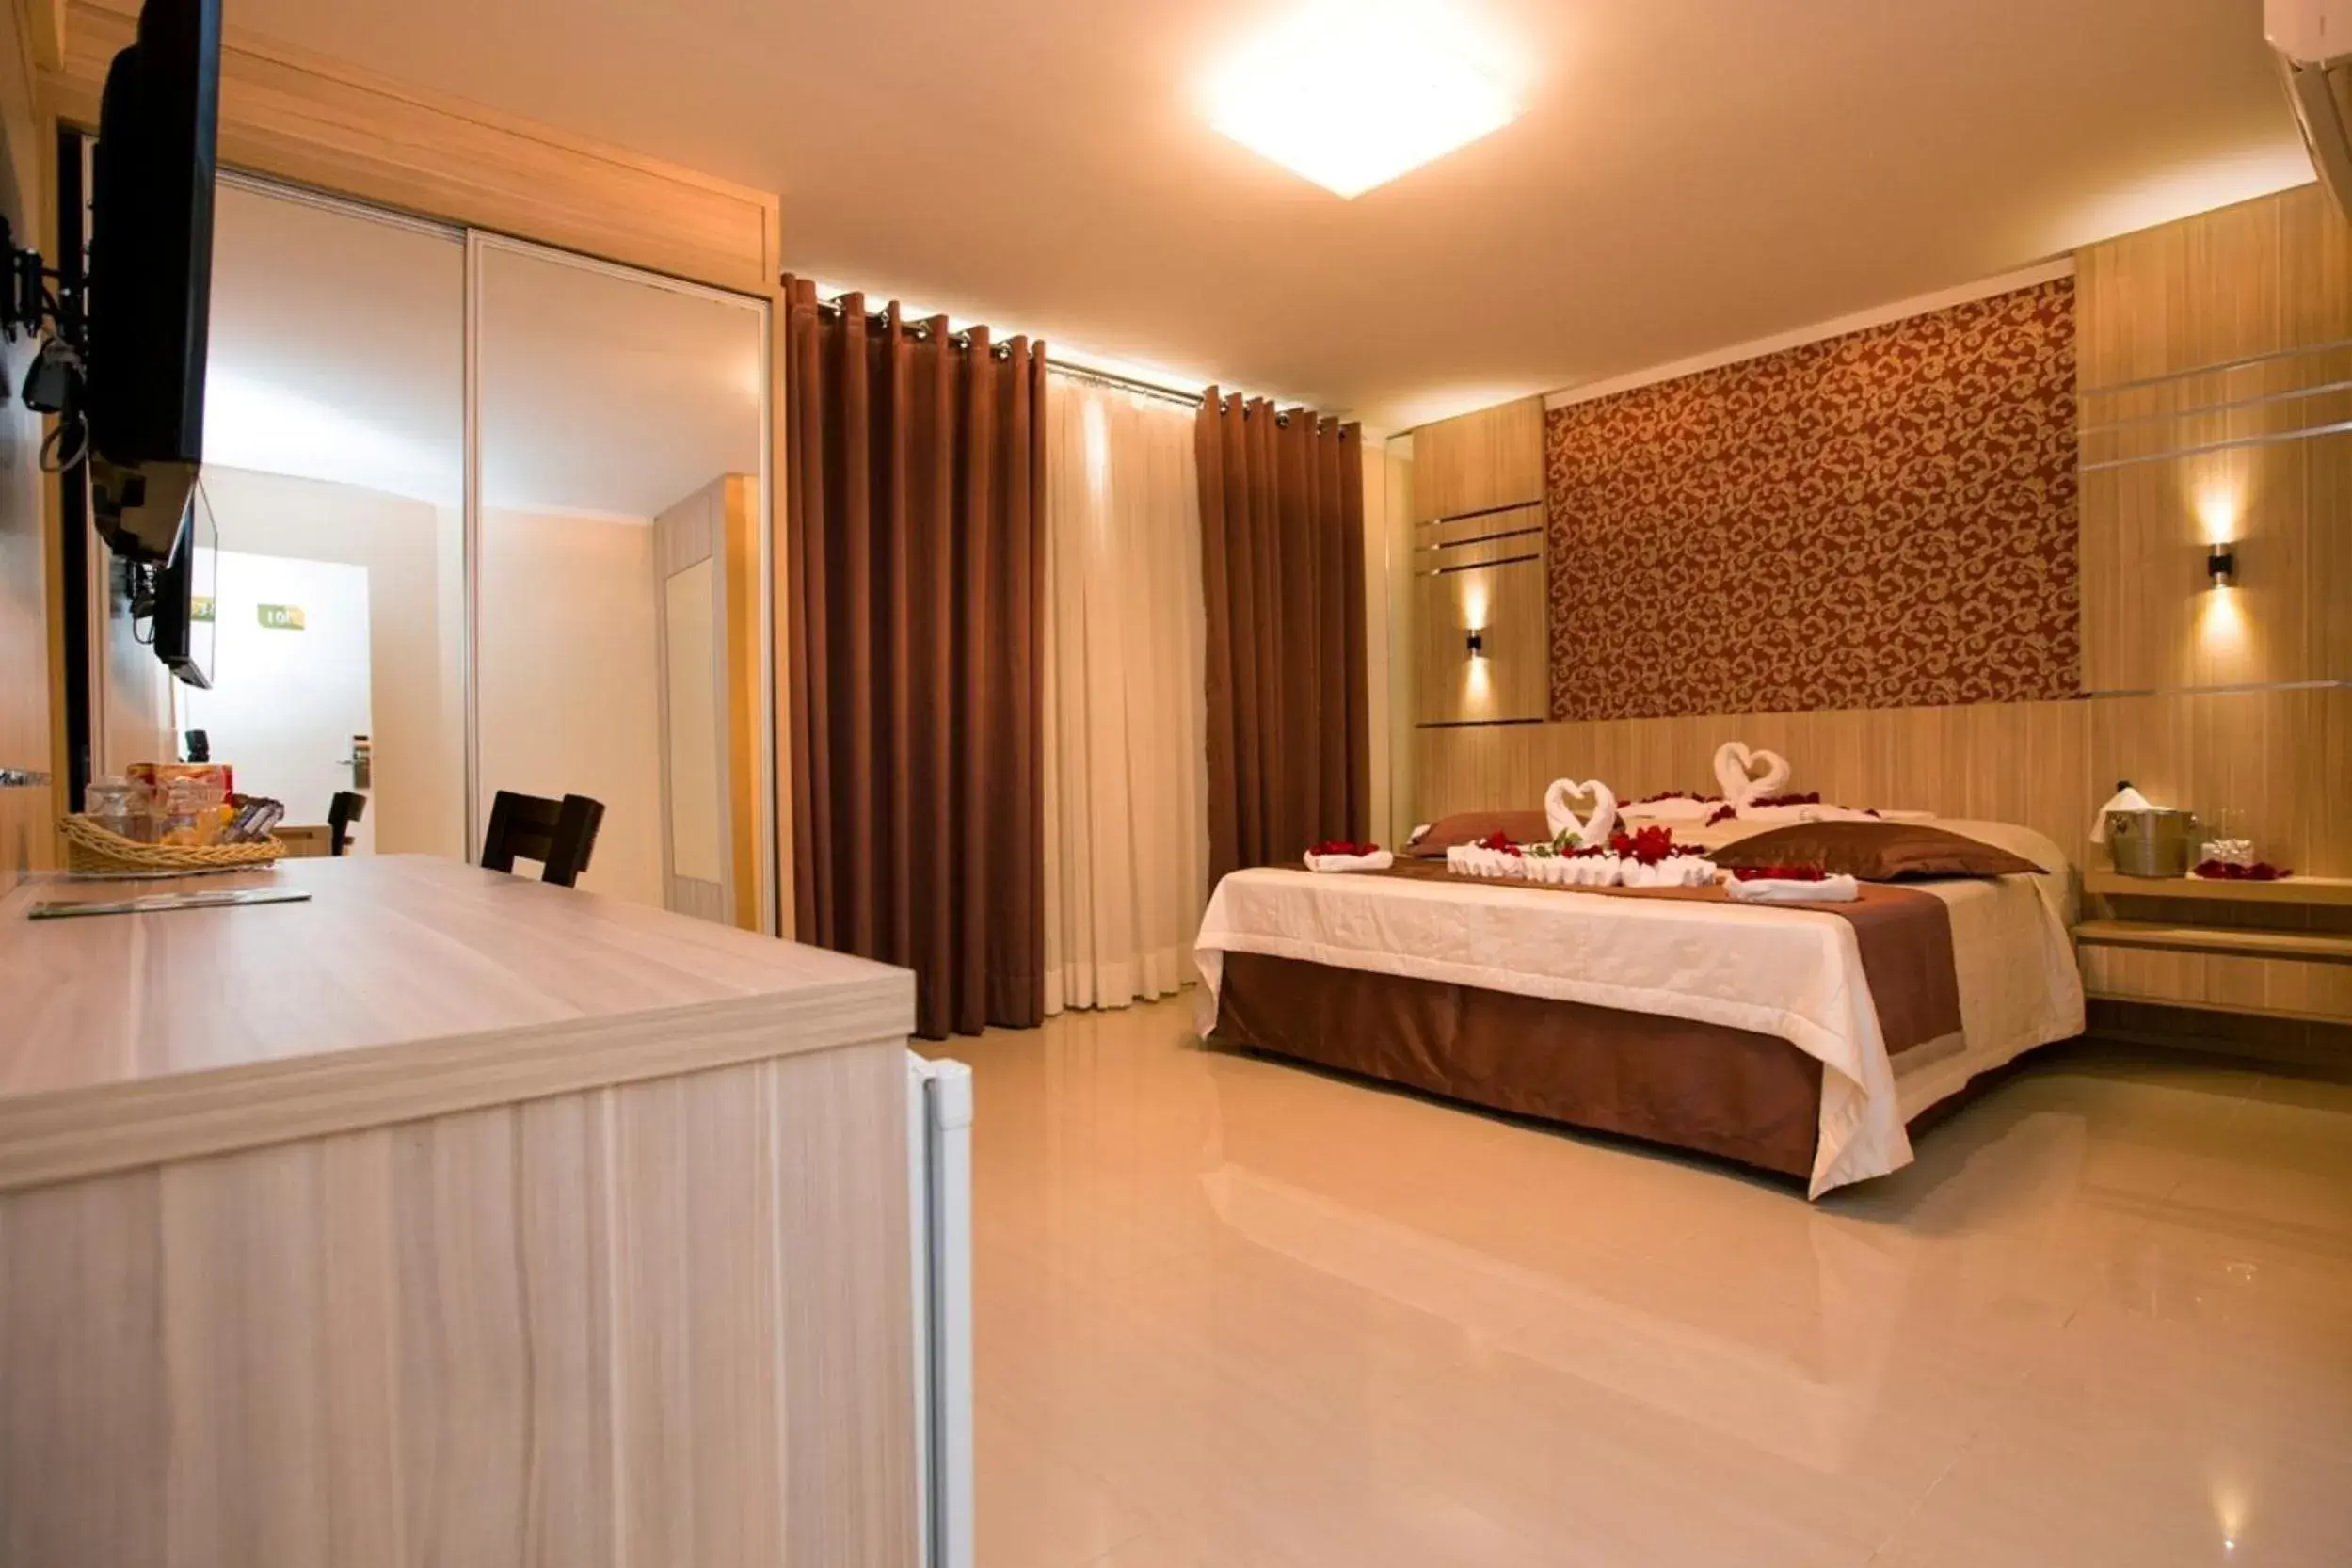 Bedroom in Pietro Angelo Hotel